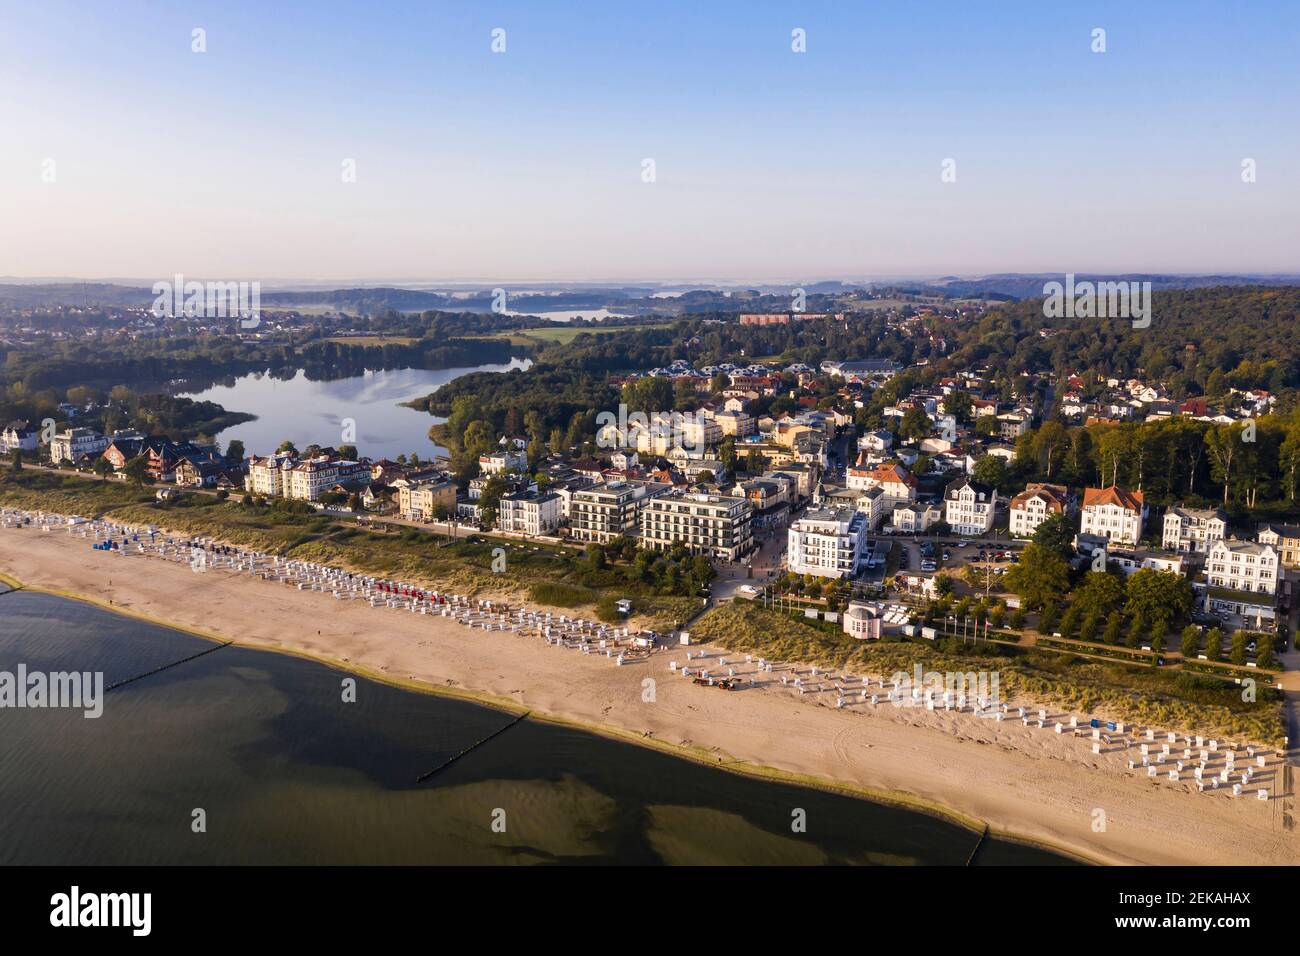 Alemania, Mecklemburgo Pomerania Occidental, Costa del Mar Báltico, Isla Usedom, Bansin, Vista aérea del complejo turístico en la costa Foto de stock